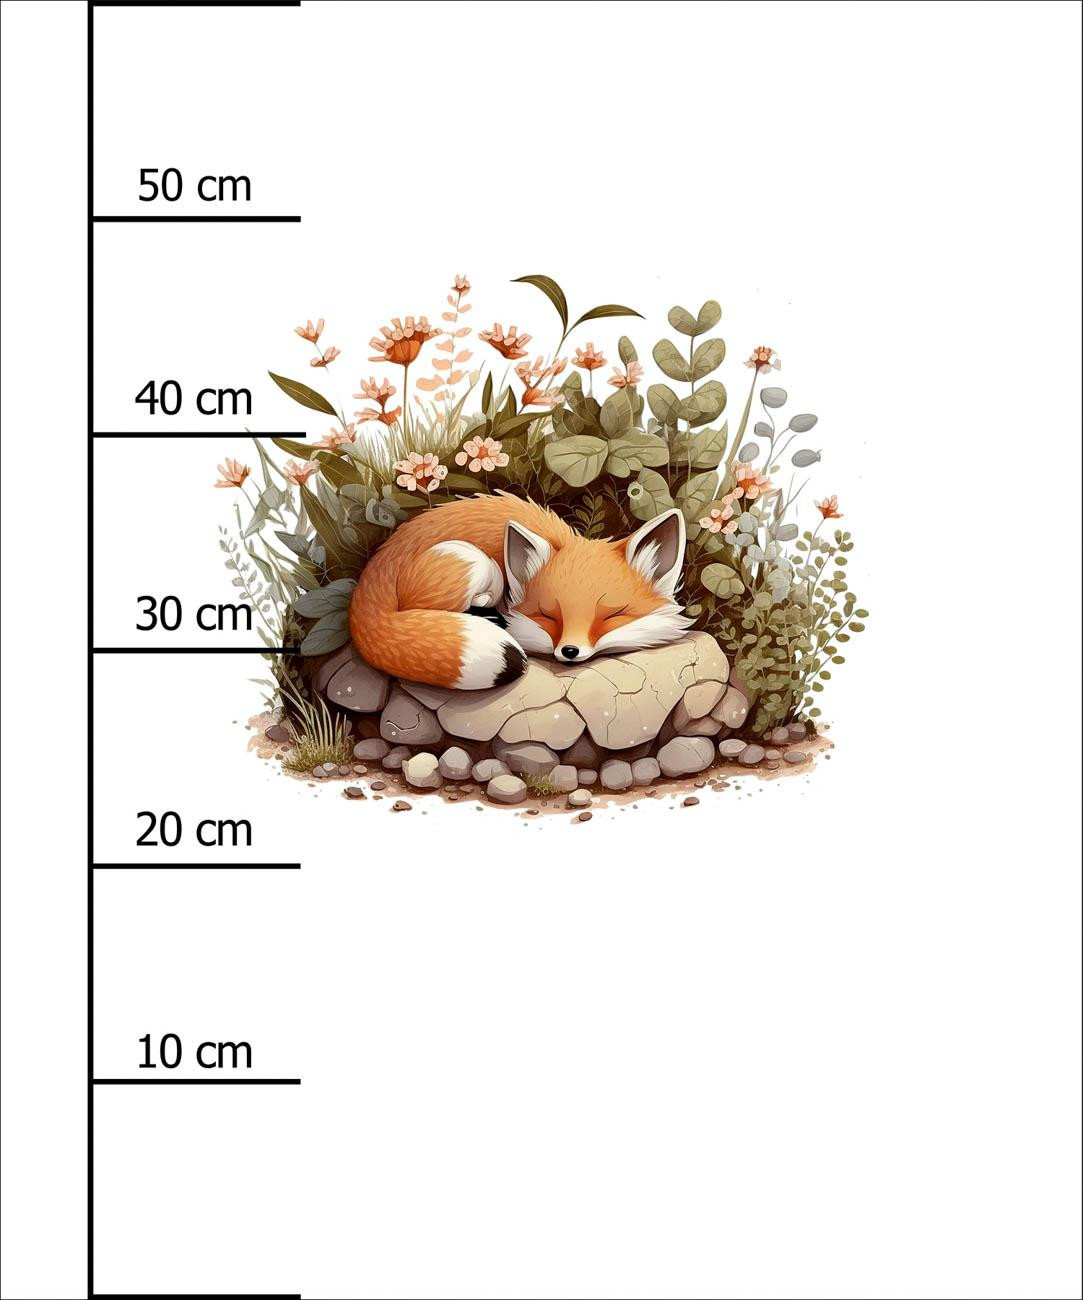 SLEEPING FOX - panel (60cm x 50cm)